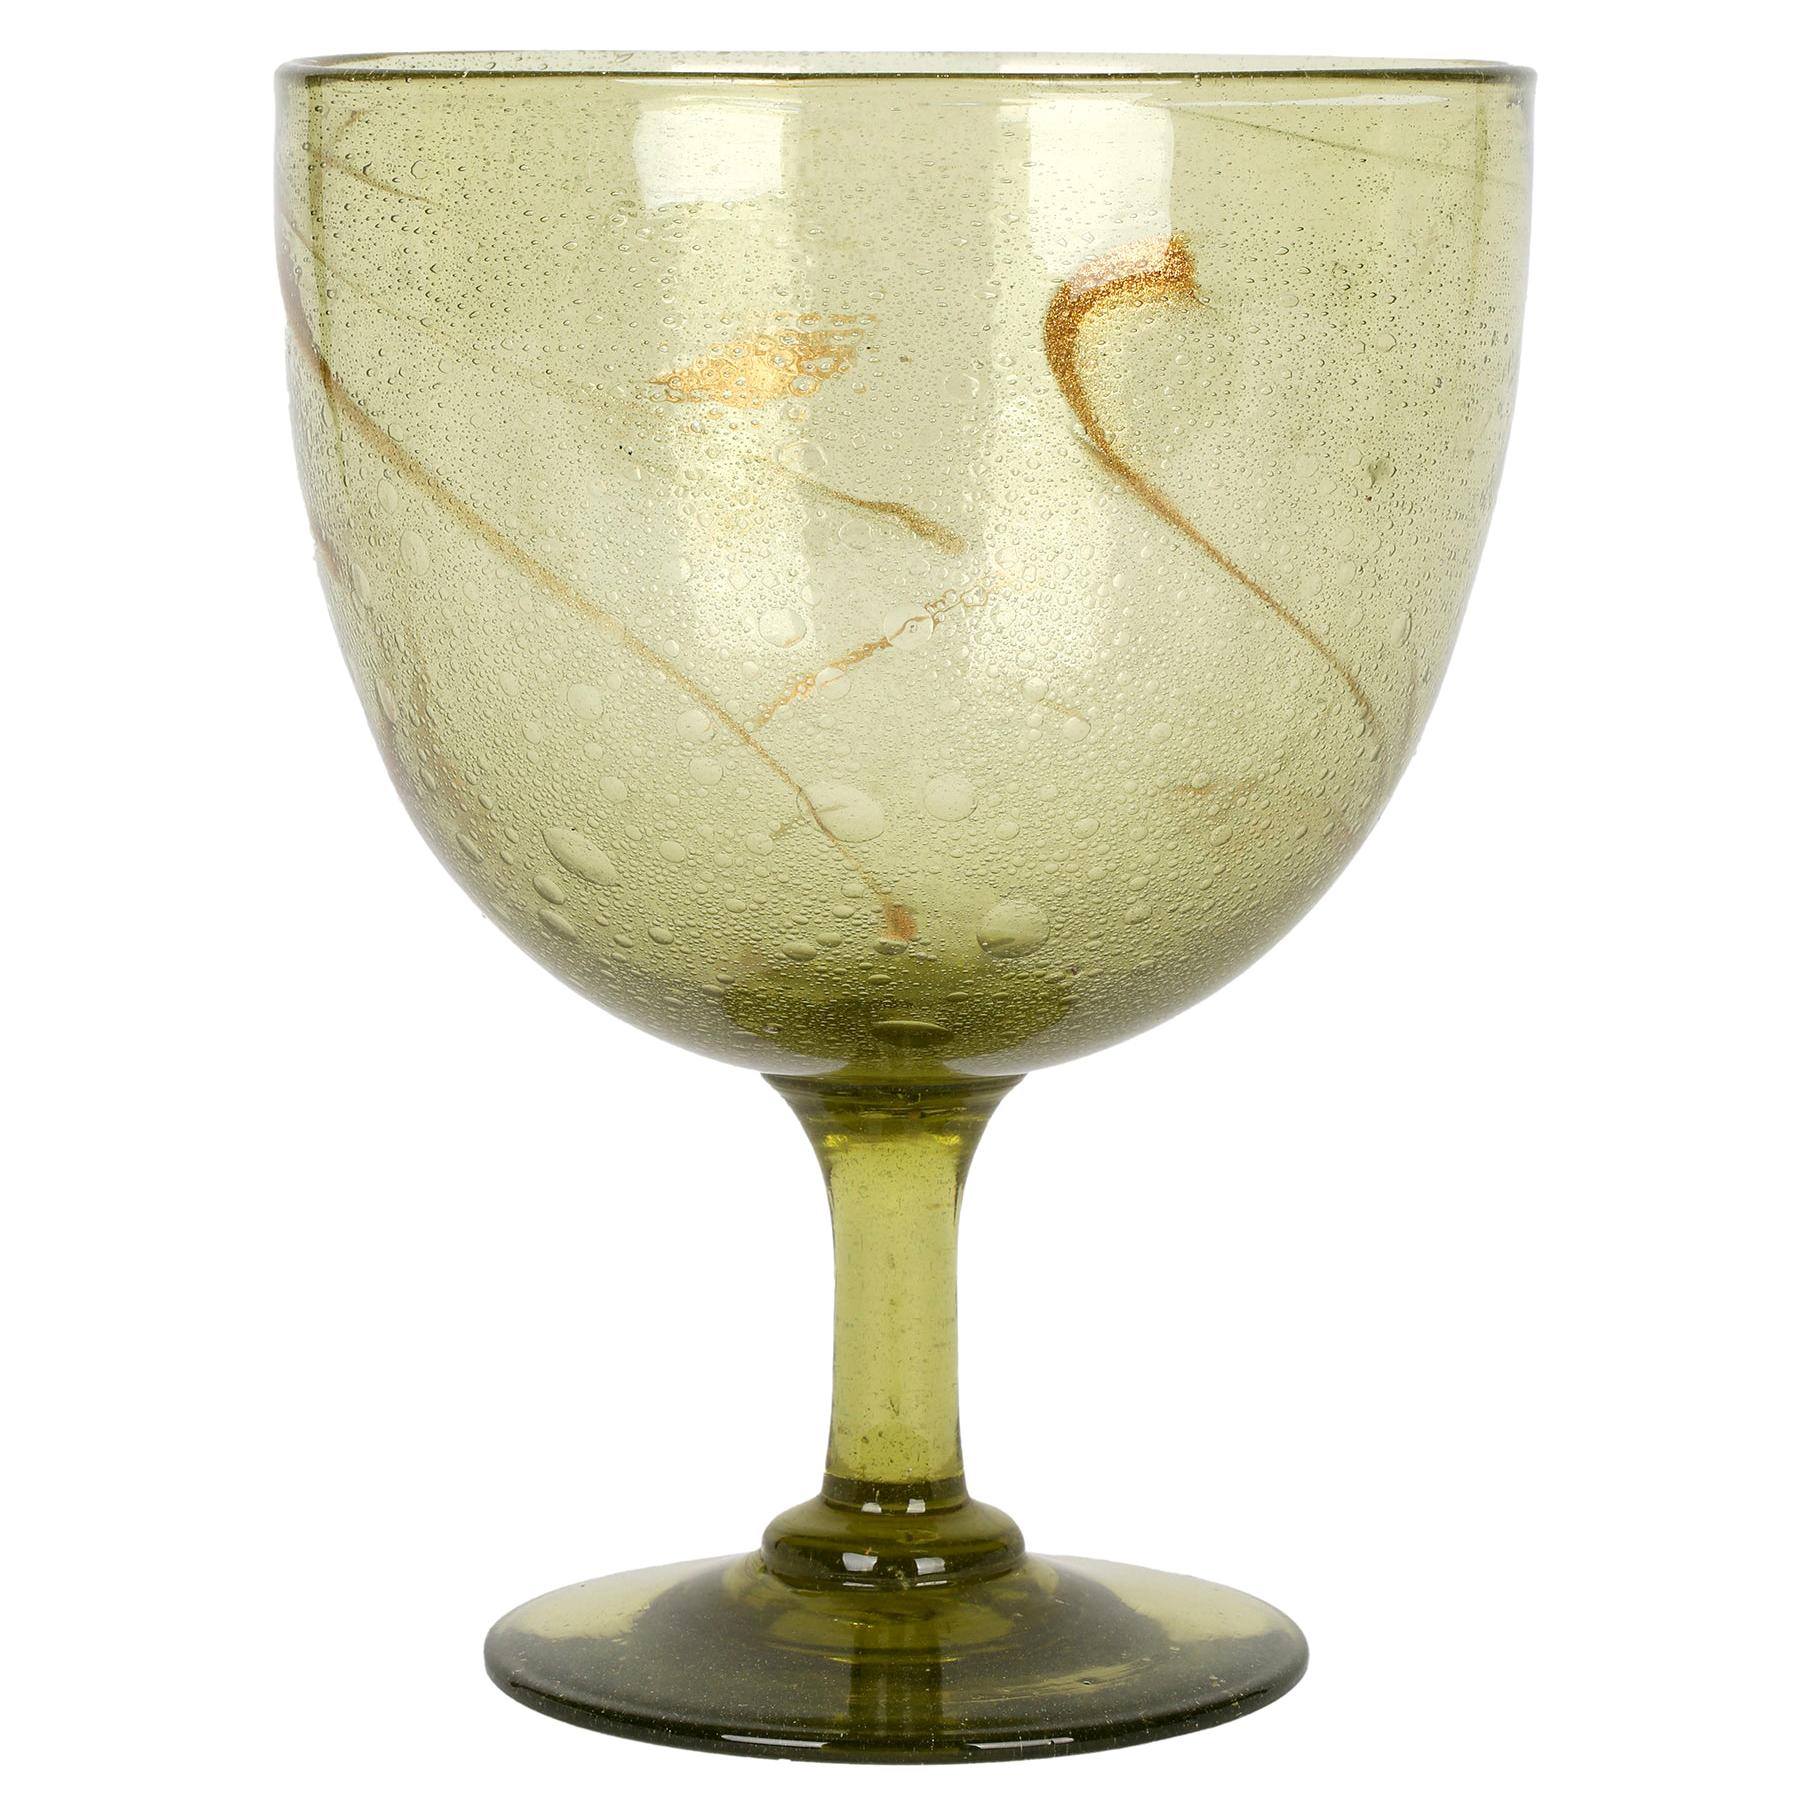 Christopher Dresser for James Coupar Clutha Glass Footed Goblet Shaped Vase